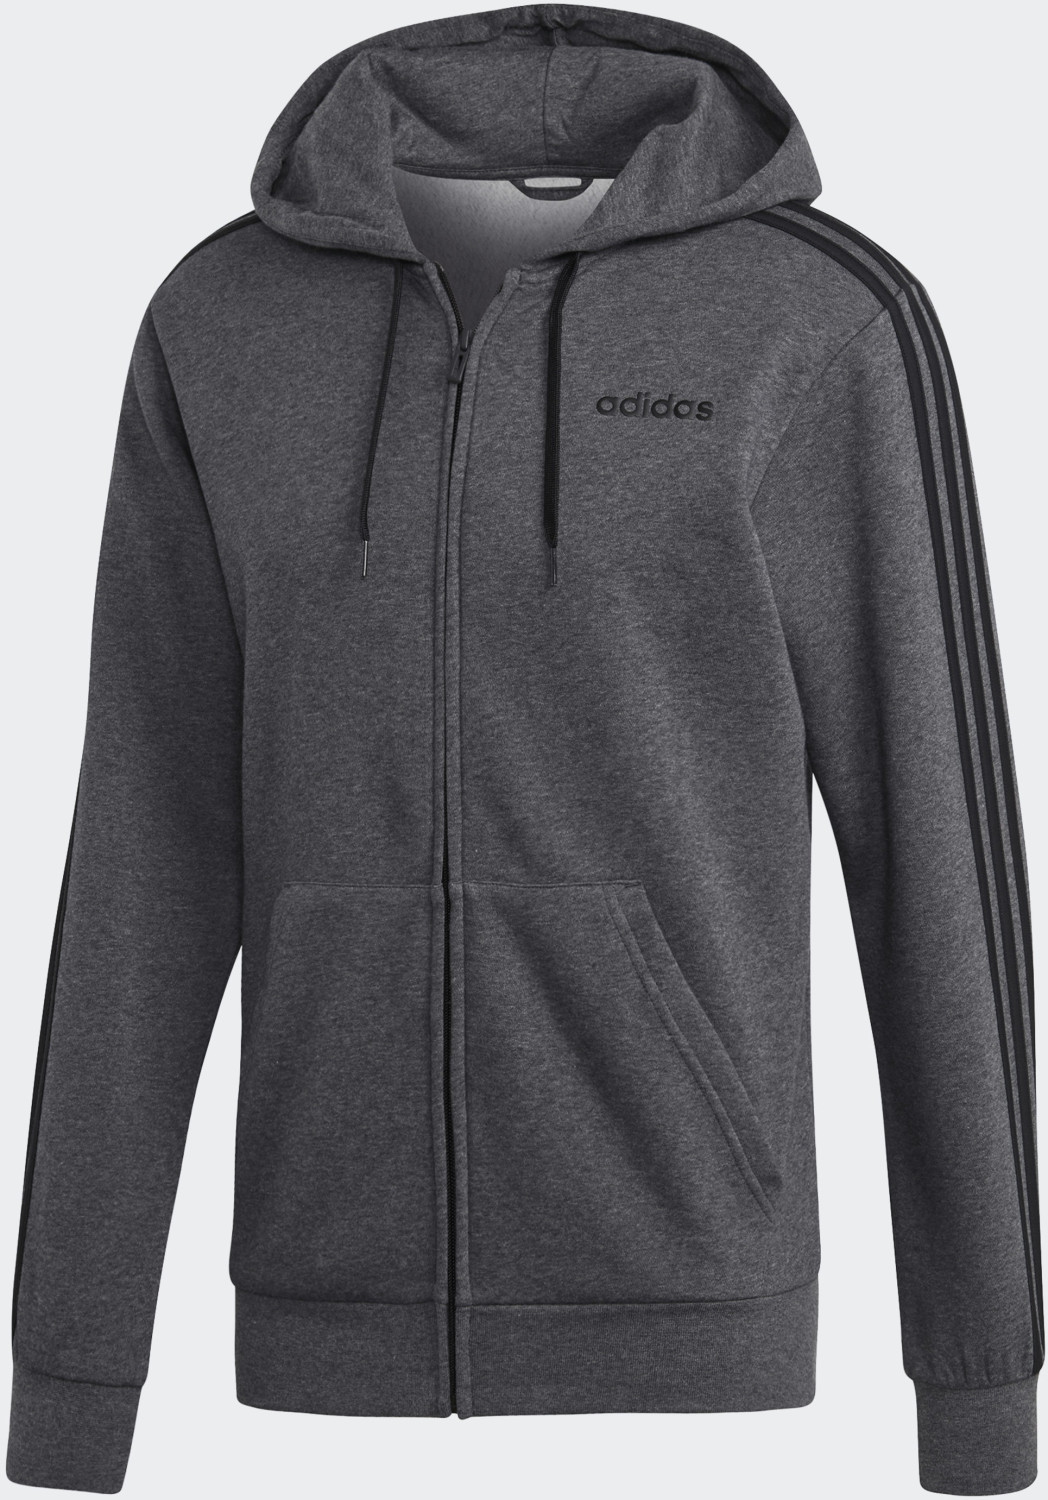 Adidas Essentials 3-Streifen Fleece bei € grey (DX2528) ab | 59,95 heather/black Kapuzenjacke Preisvergleich dark